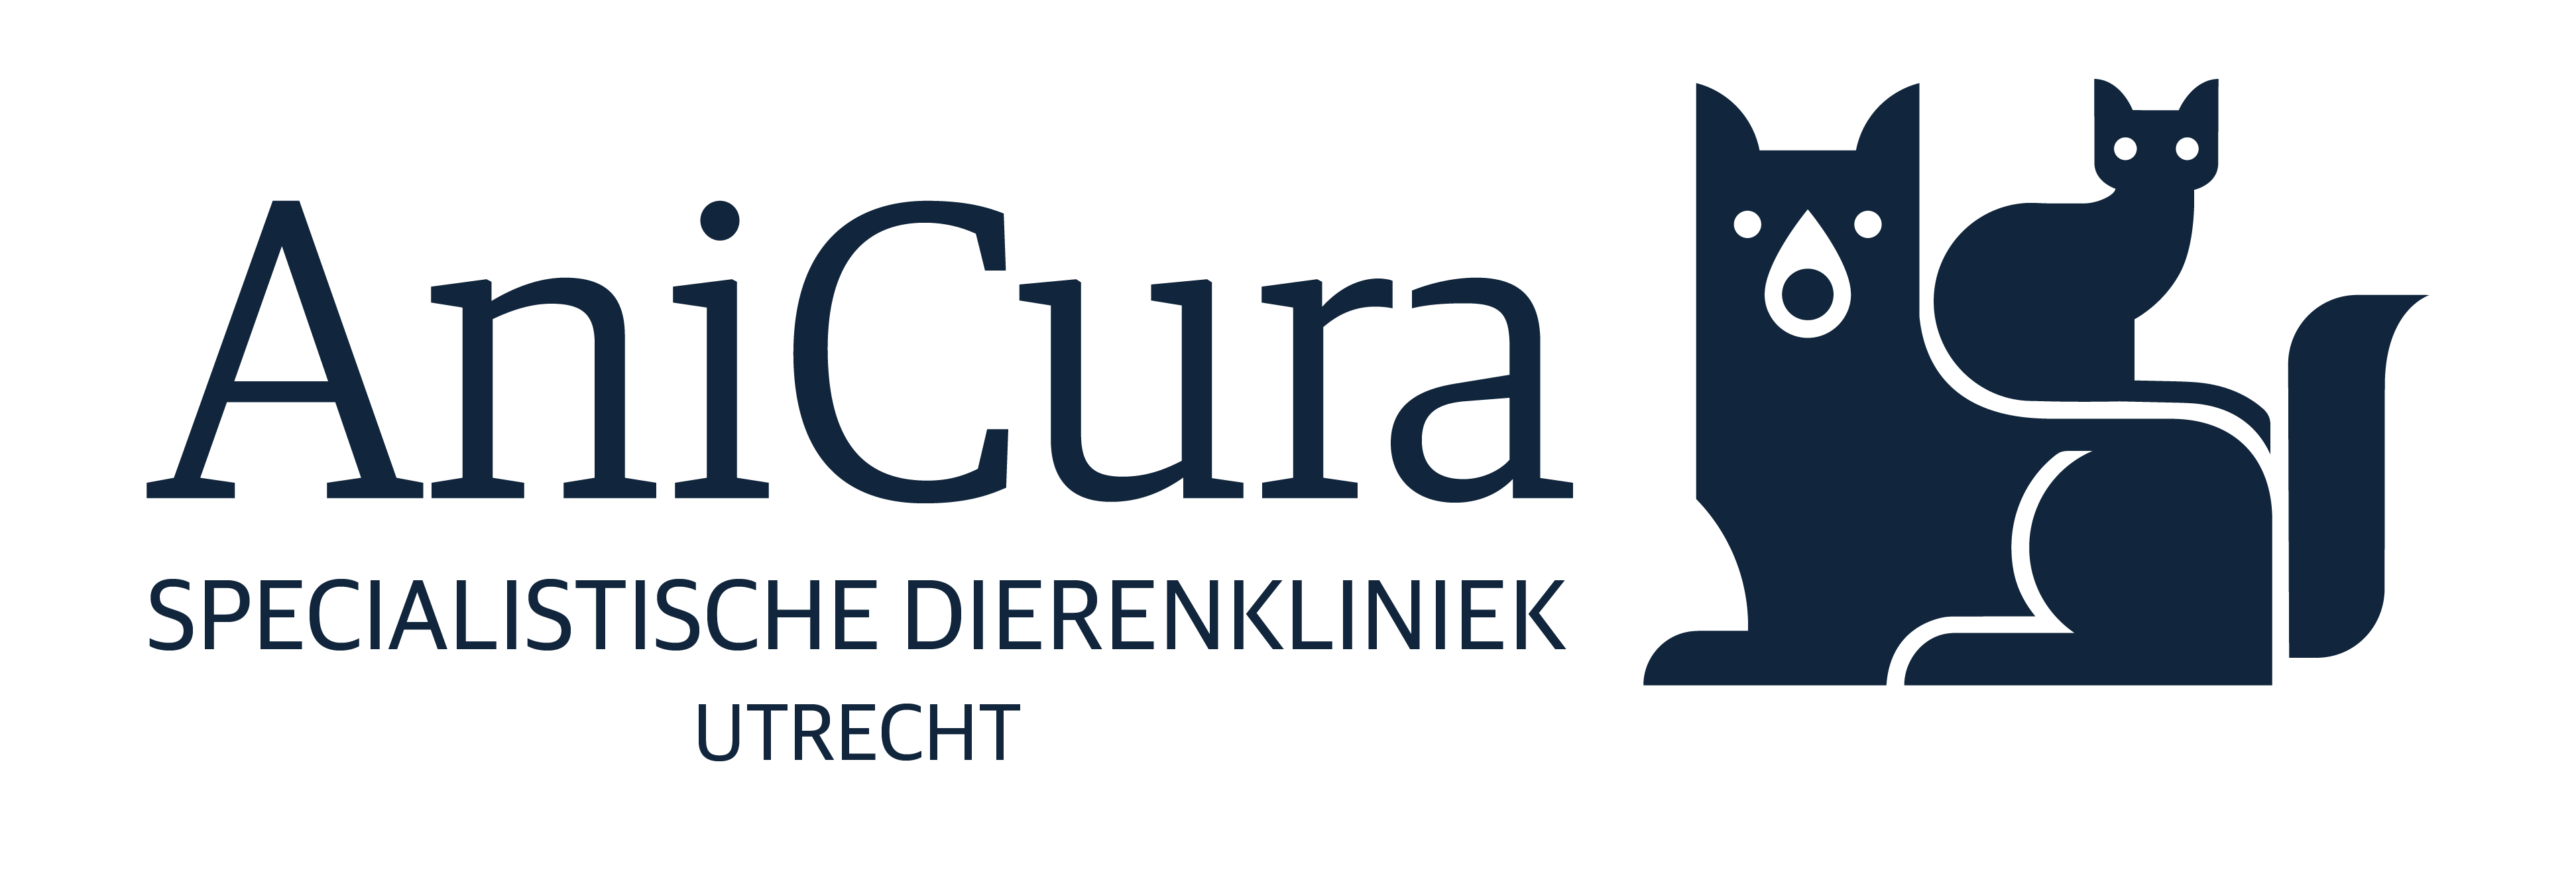 AniCura Specialistische Dierenkliniek Utrecht logo